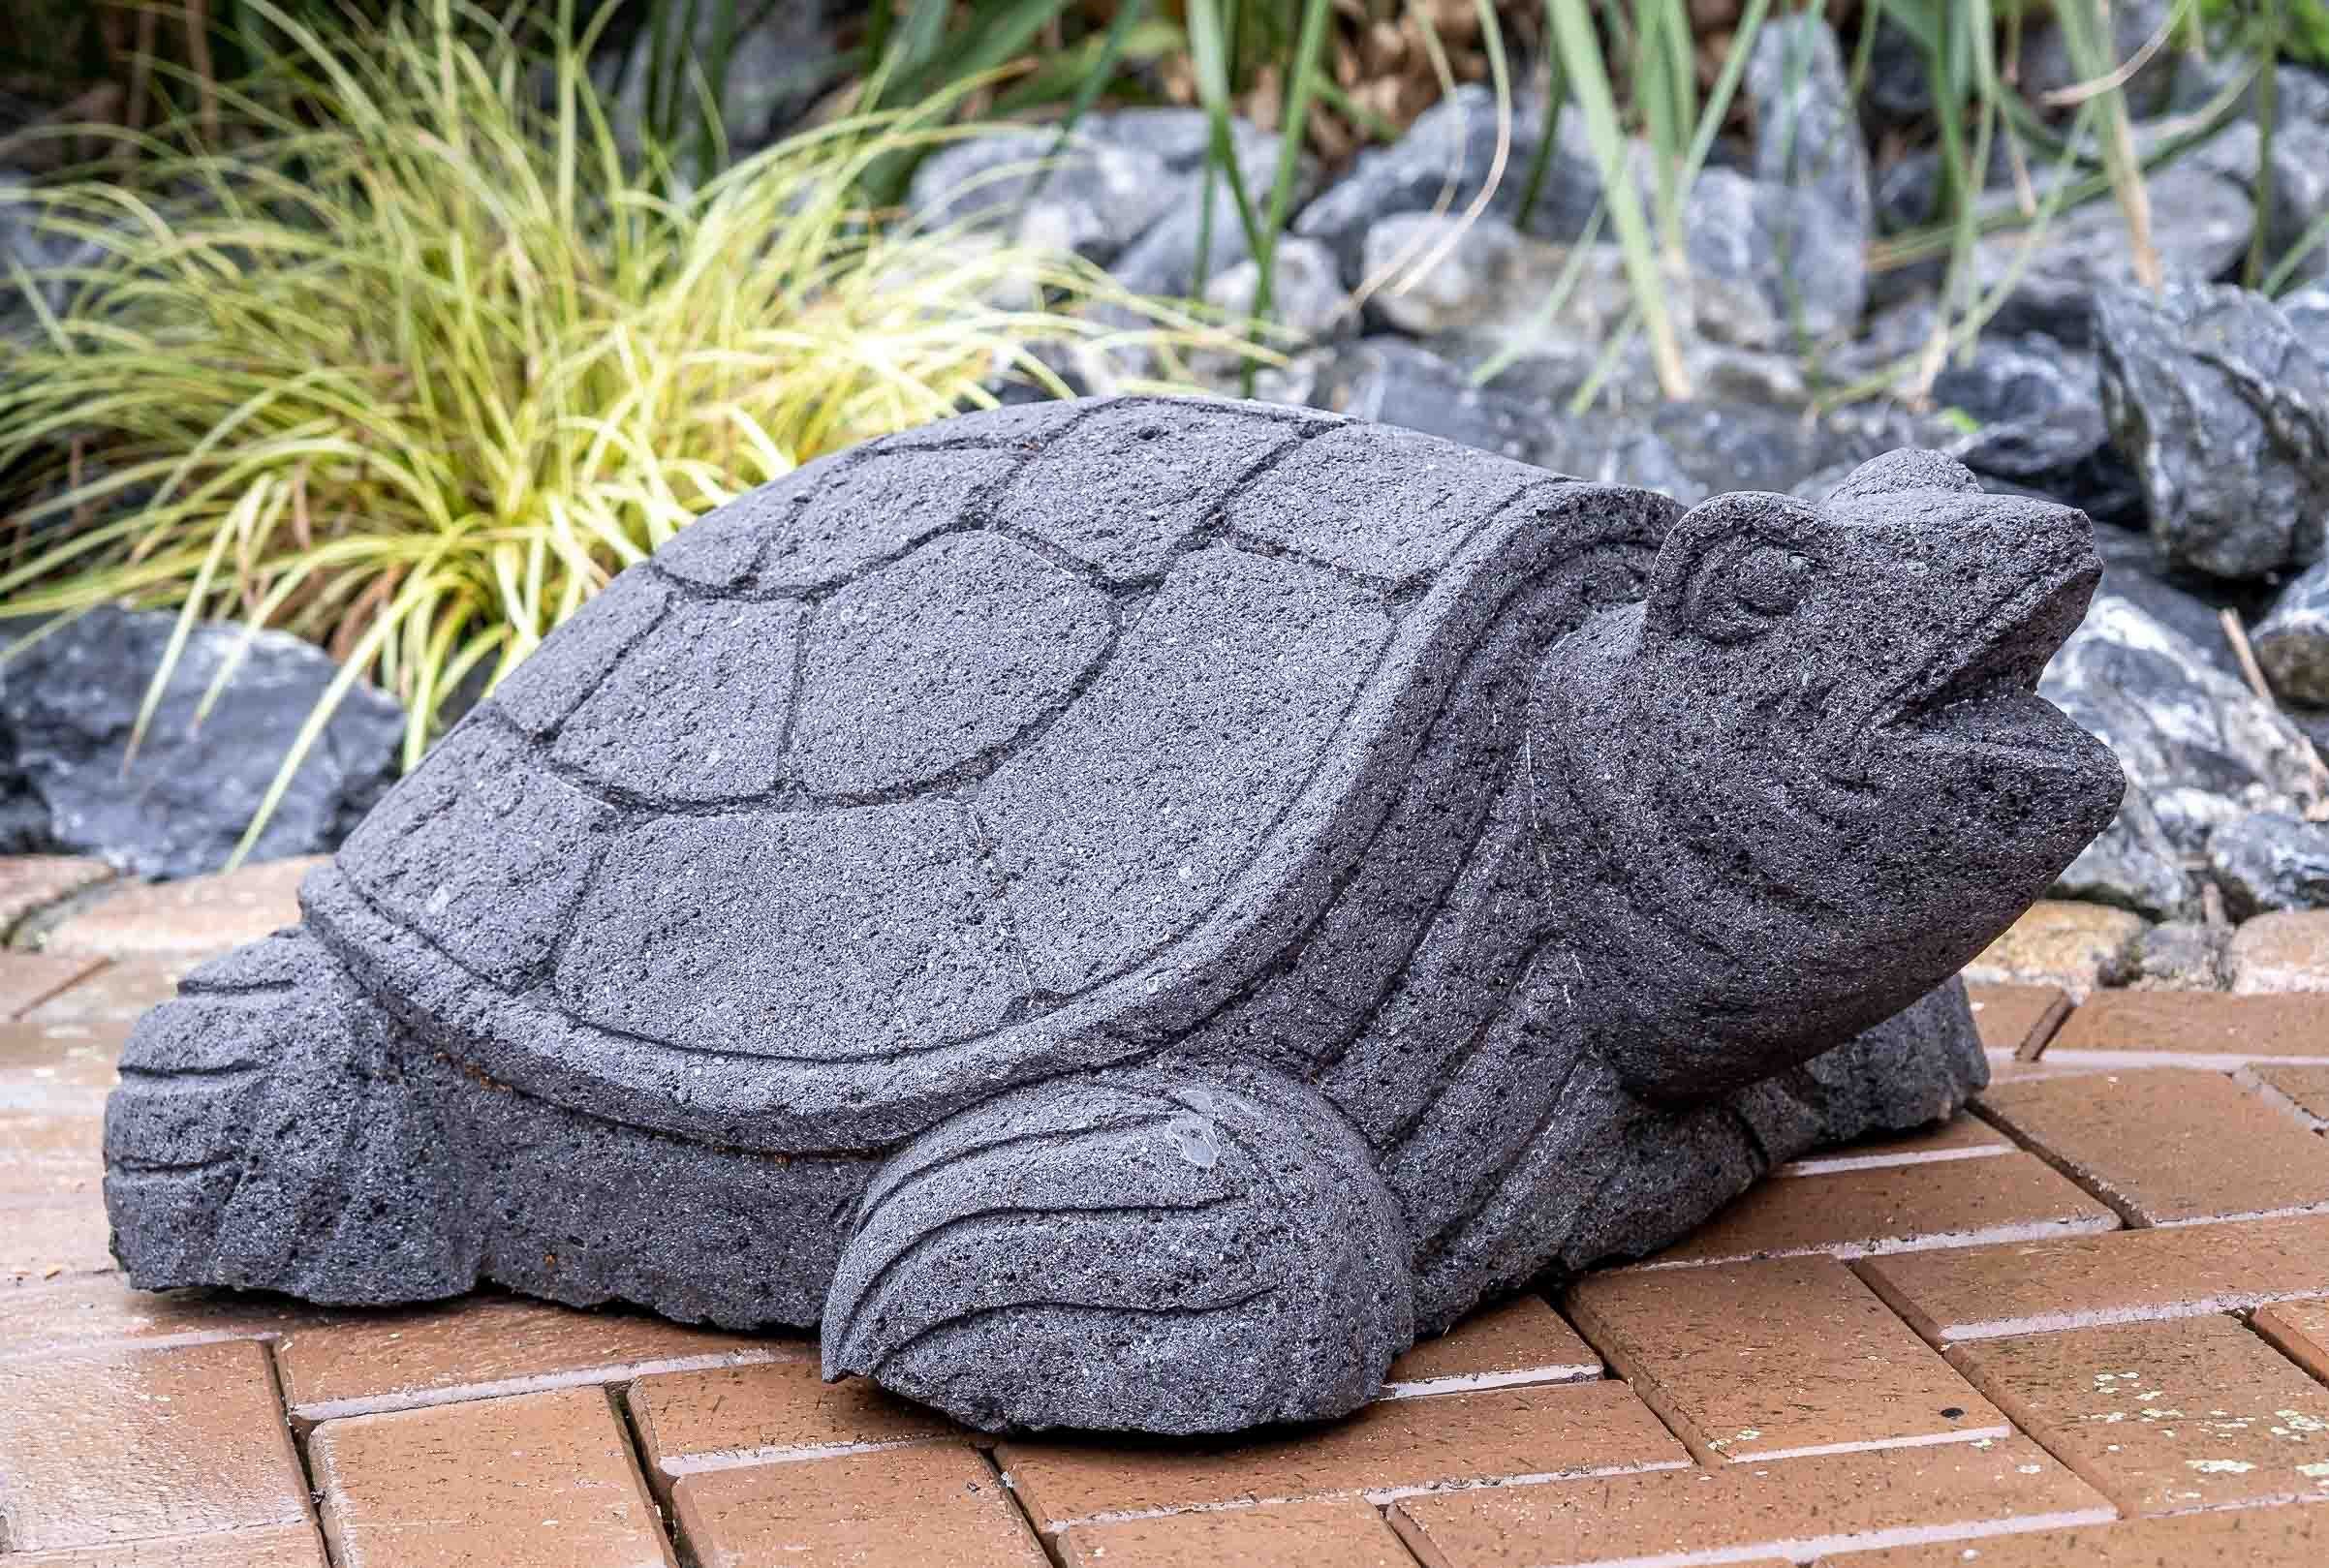 IDYL Gartenfigur Lavastein– Frost, Lavastein Figur Schildkröte, sehr – robust gegen – IDYL ein UV-Strahlung. Regen witterungsbeständig Naturprodukt und